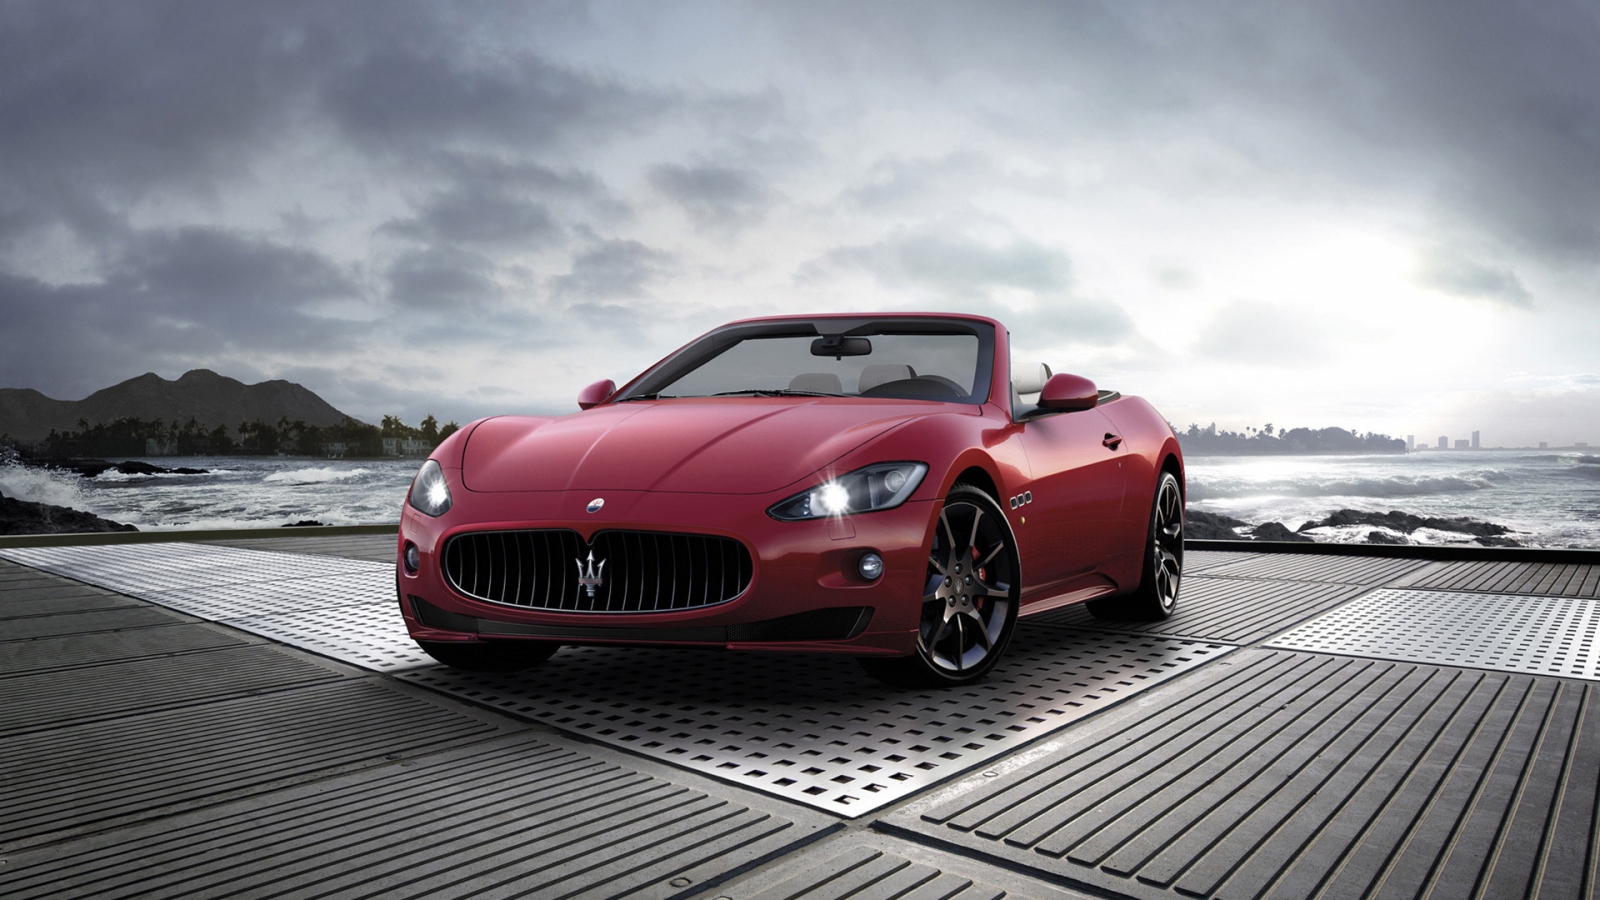 2011 Maserati GranCabrio Sport for 1600 x 900 HDTV resolution